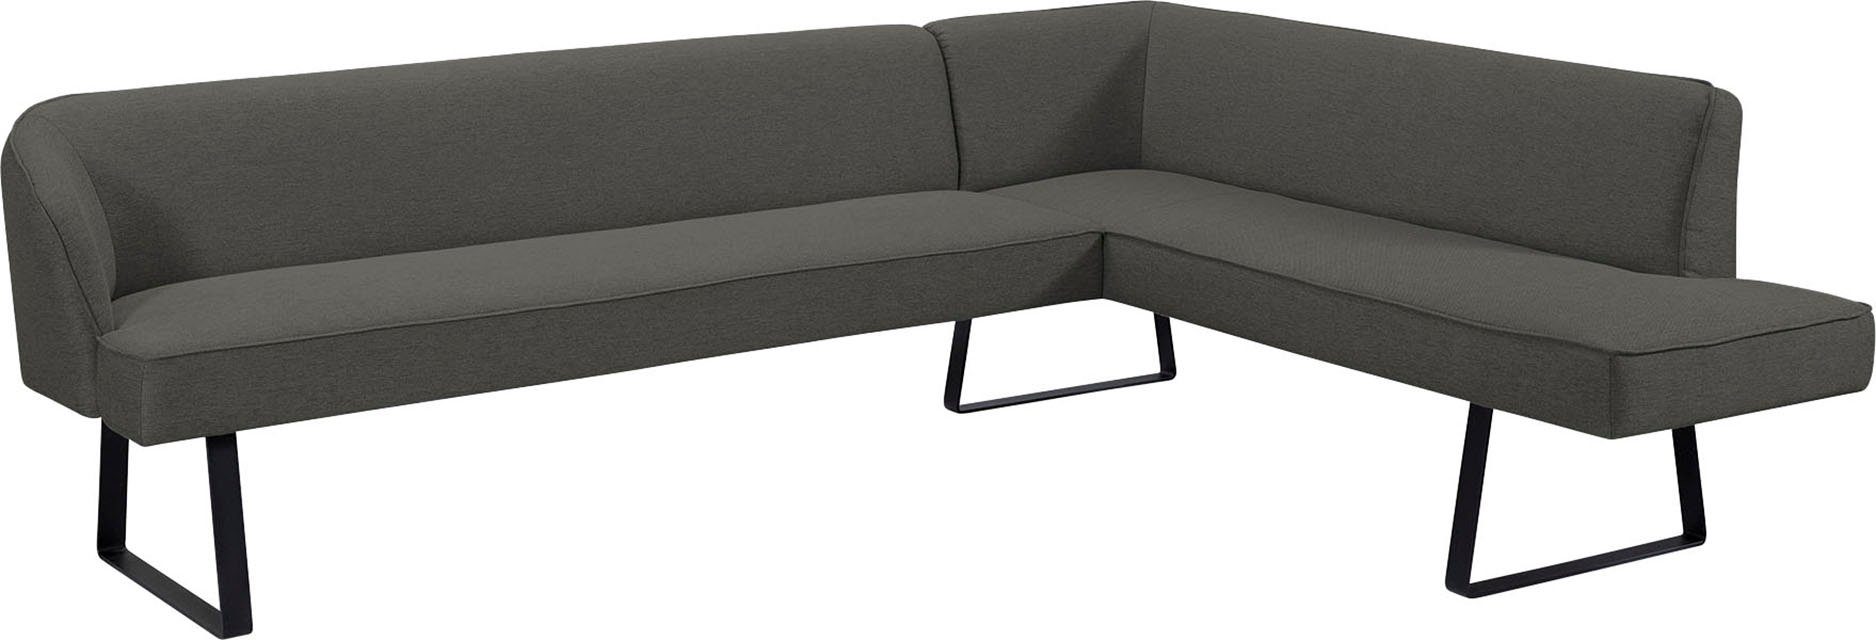 Americano, Eckbank sofa - fashion verschiedenen in Keder mit Bezug Qualitäten exxpo Metallfüßen, und